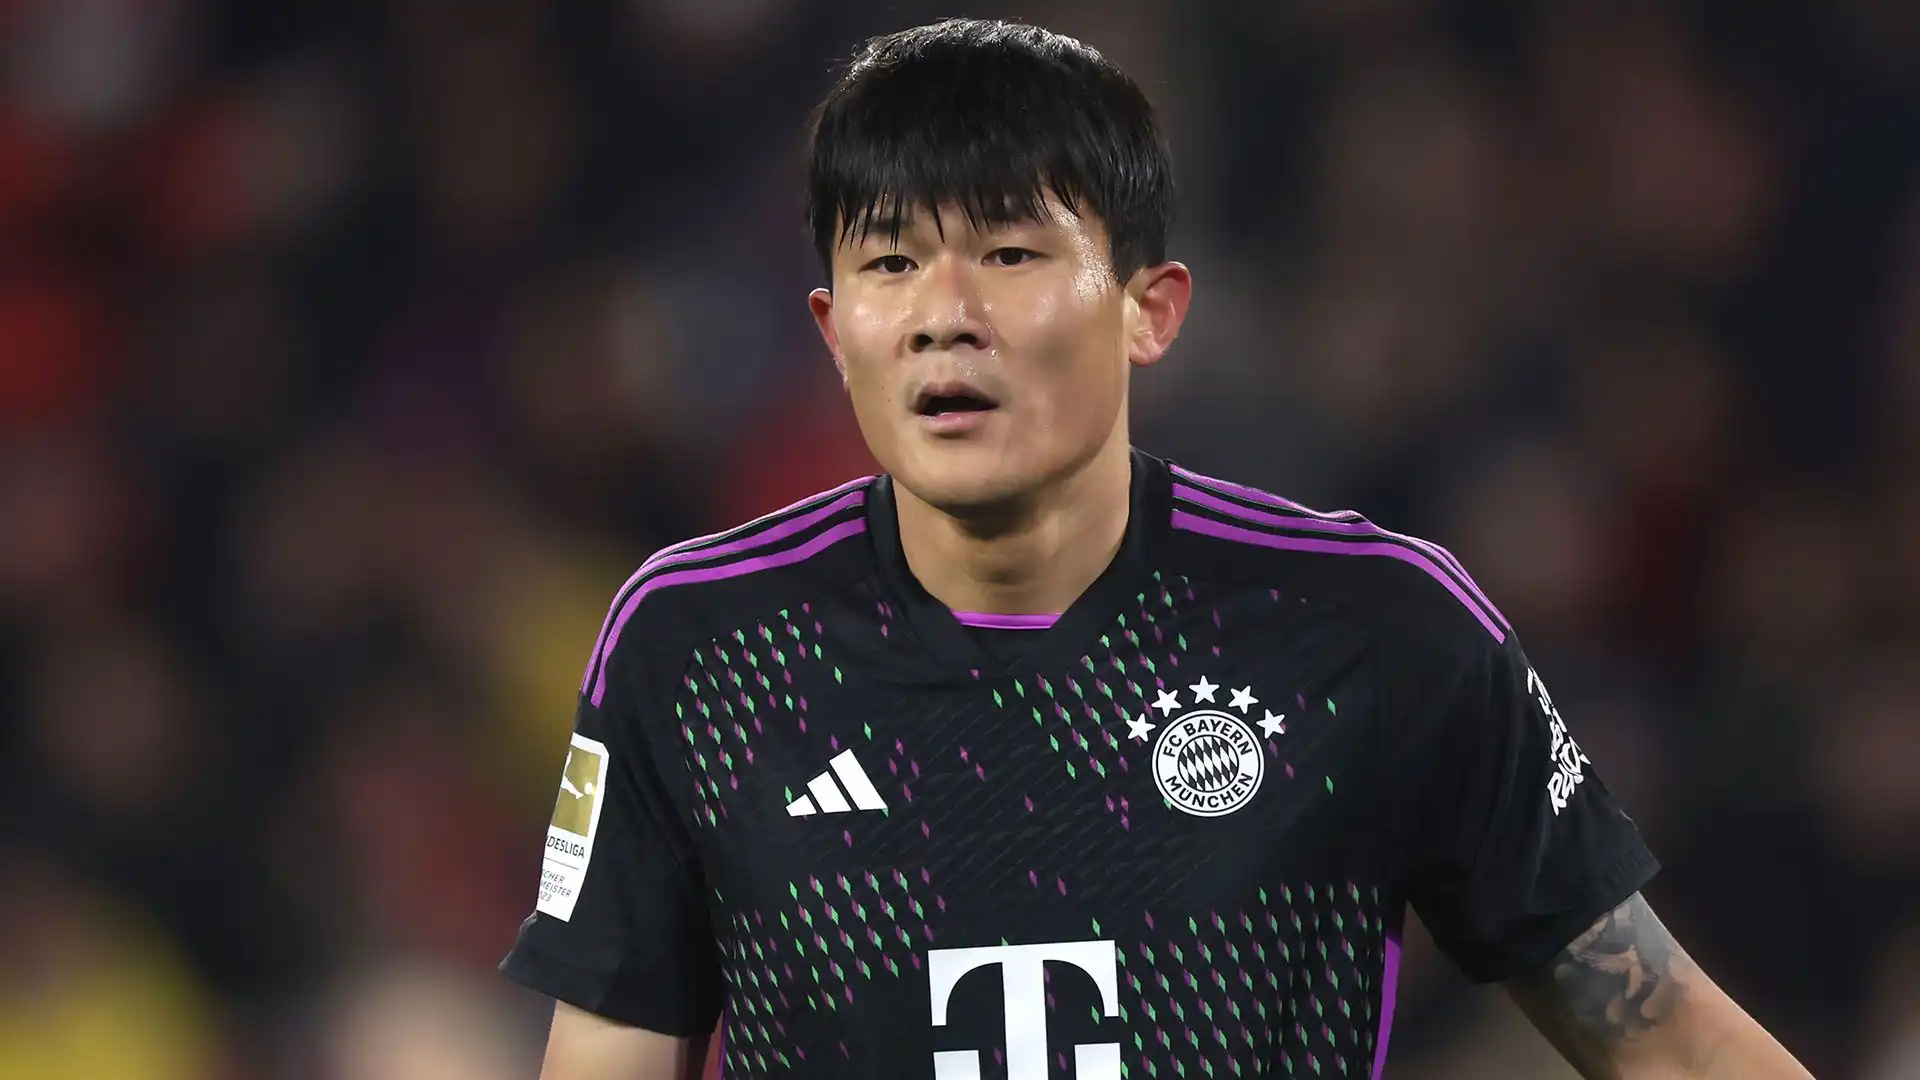 Il difensore sudcoreano non ha vissuto una prima stagione felice a Monaco di Baviera e il suo futuro sarebbe in dubbio